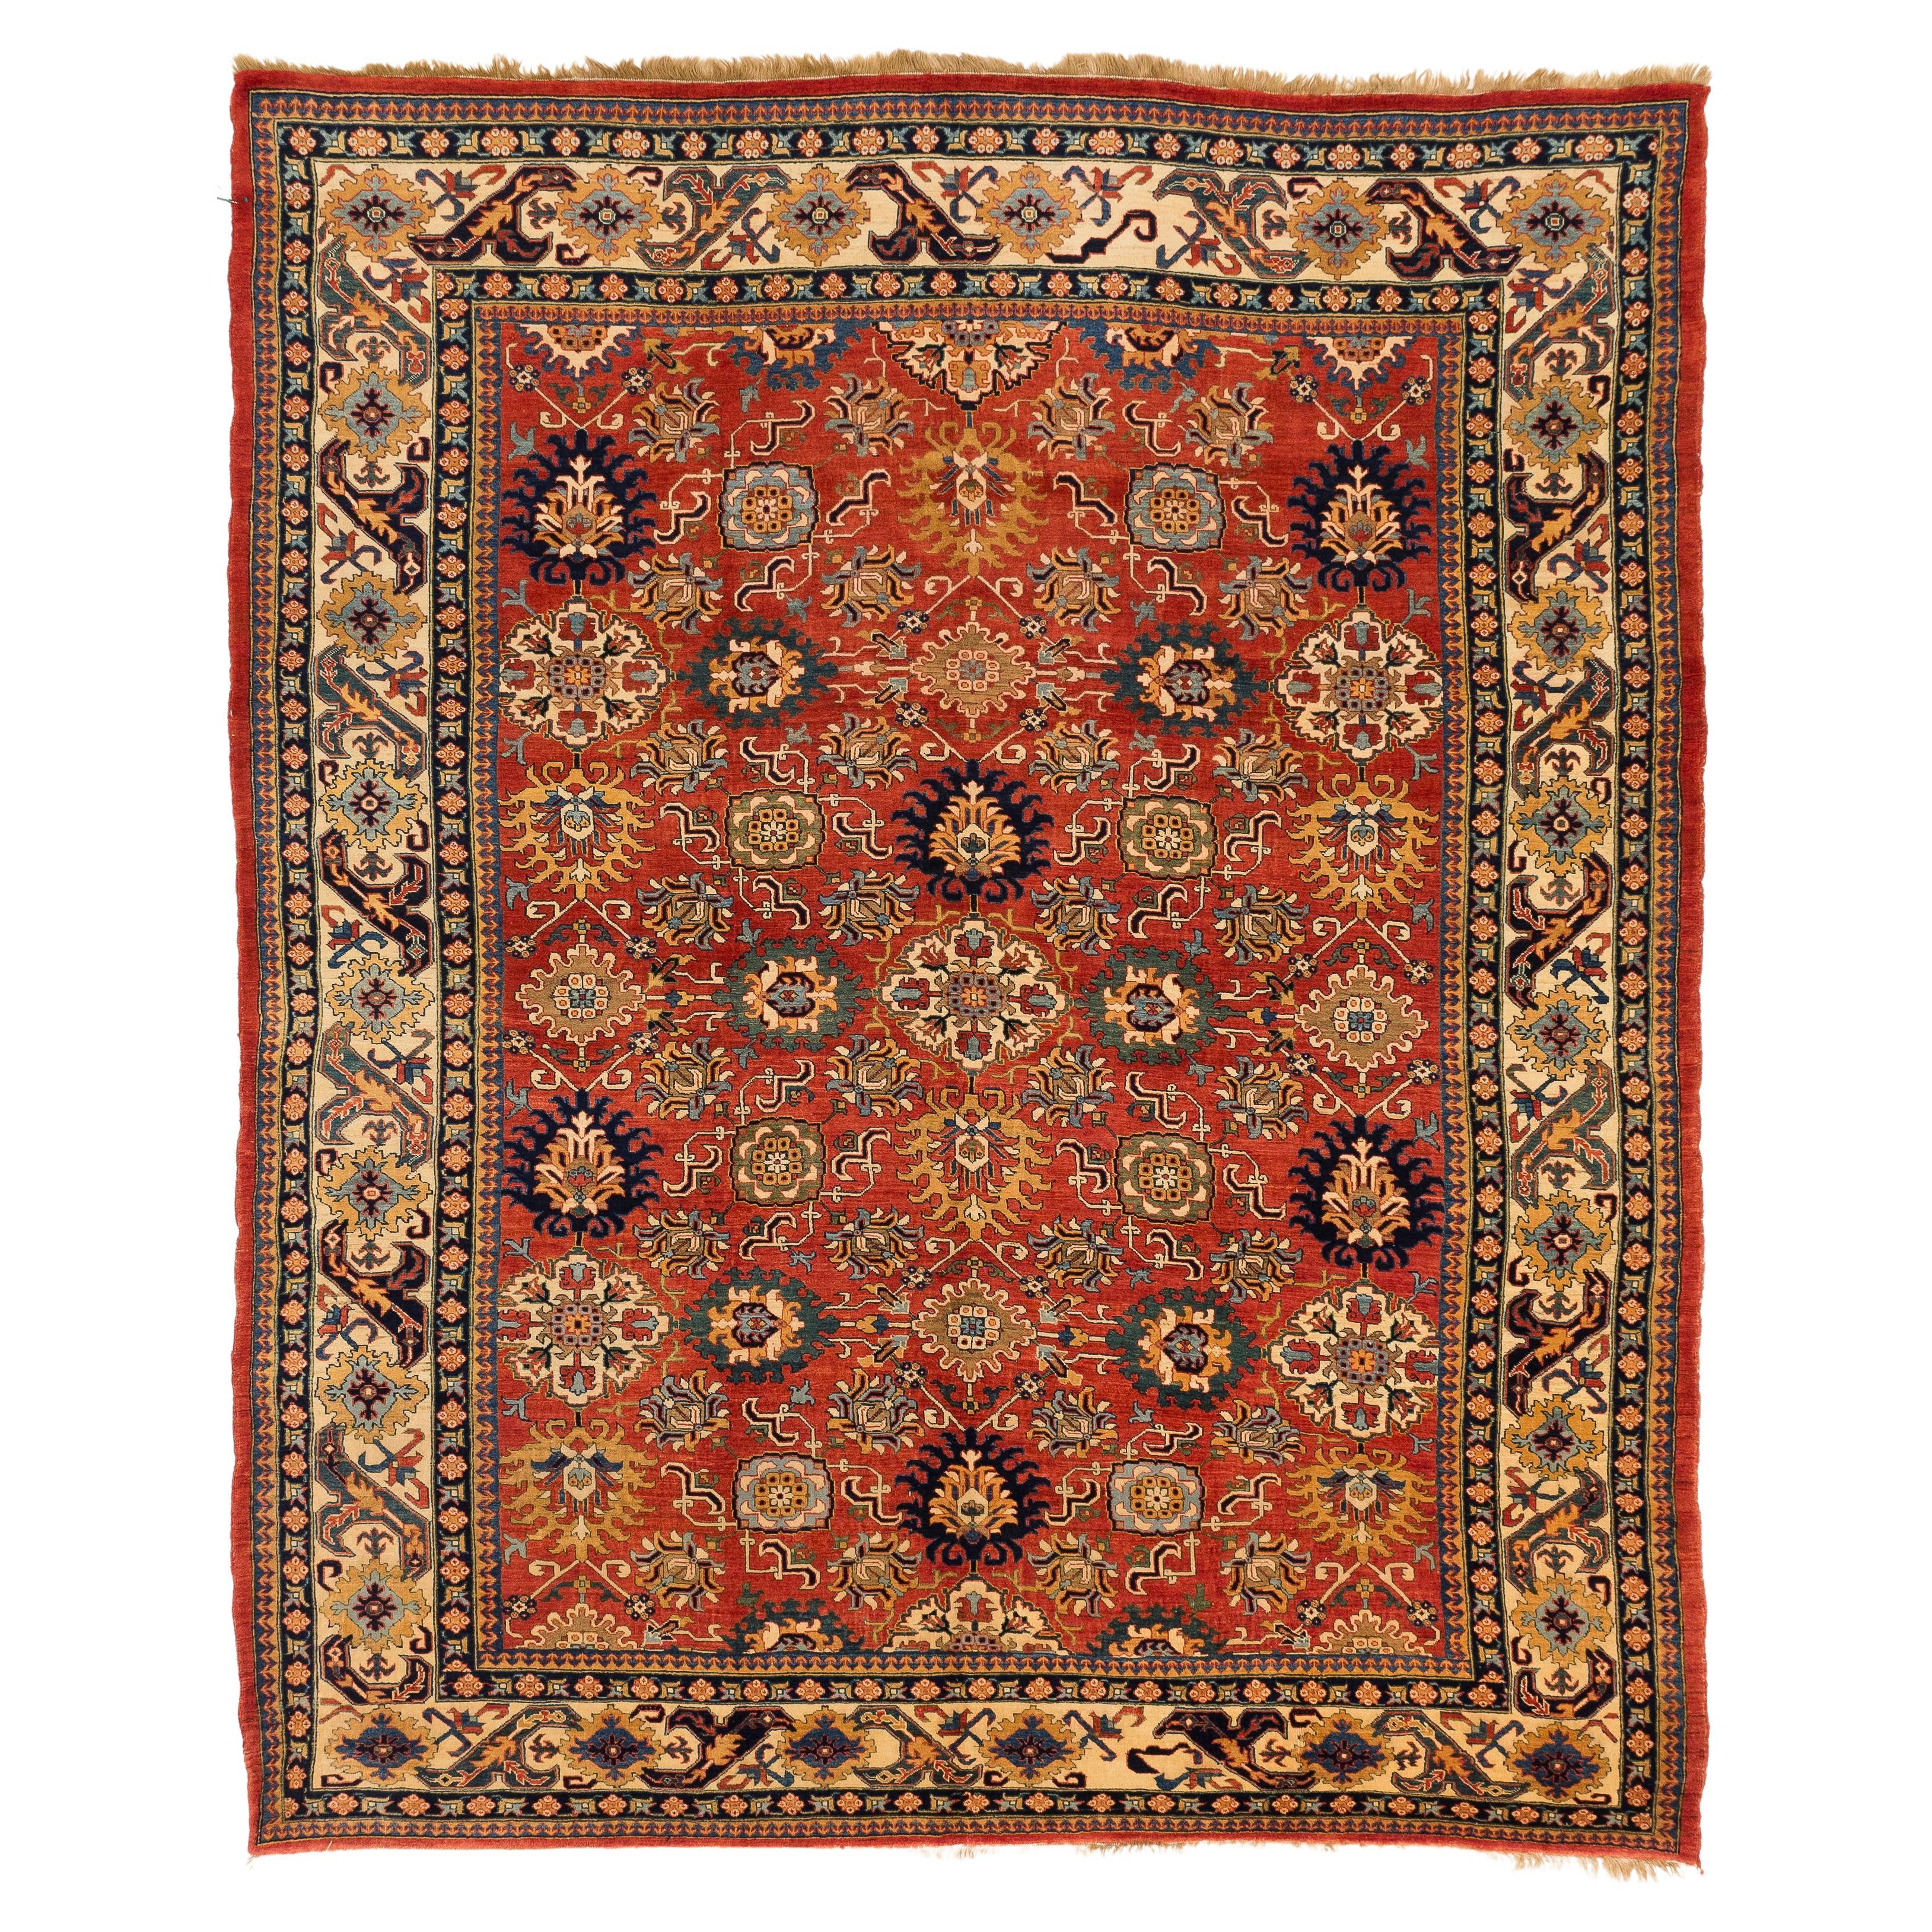 Moderner handgewebter persischer Teppich im Sultanabad-Design des 21. Jahrhunderts